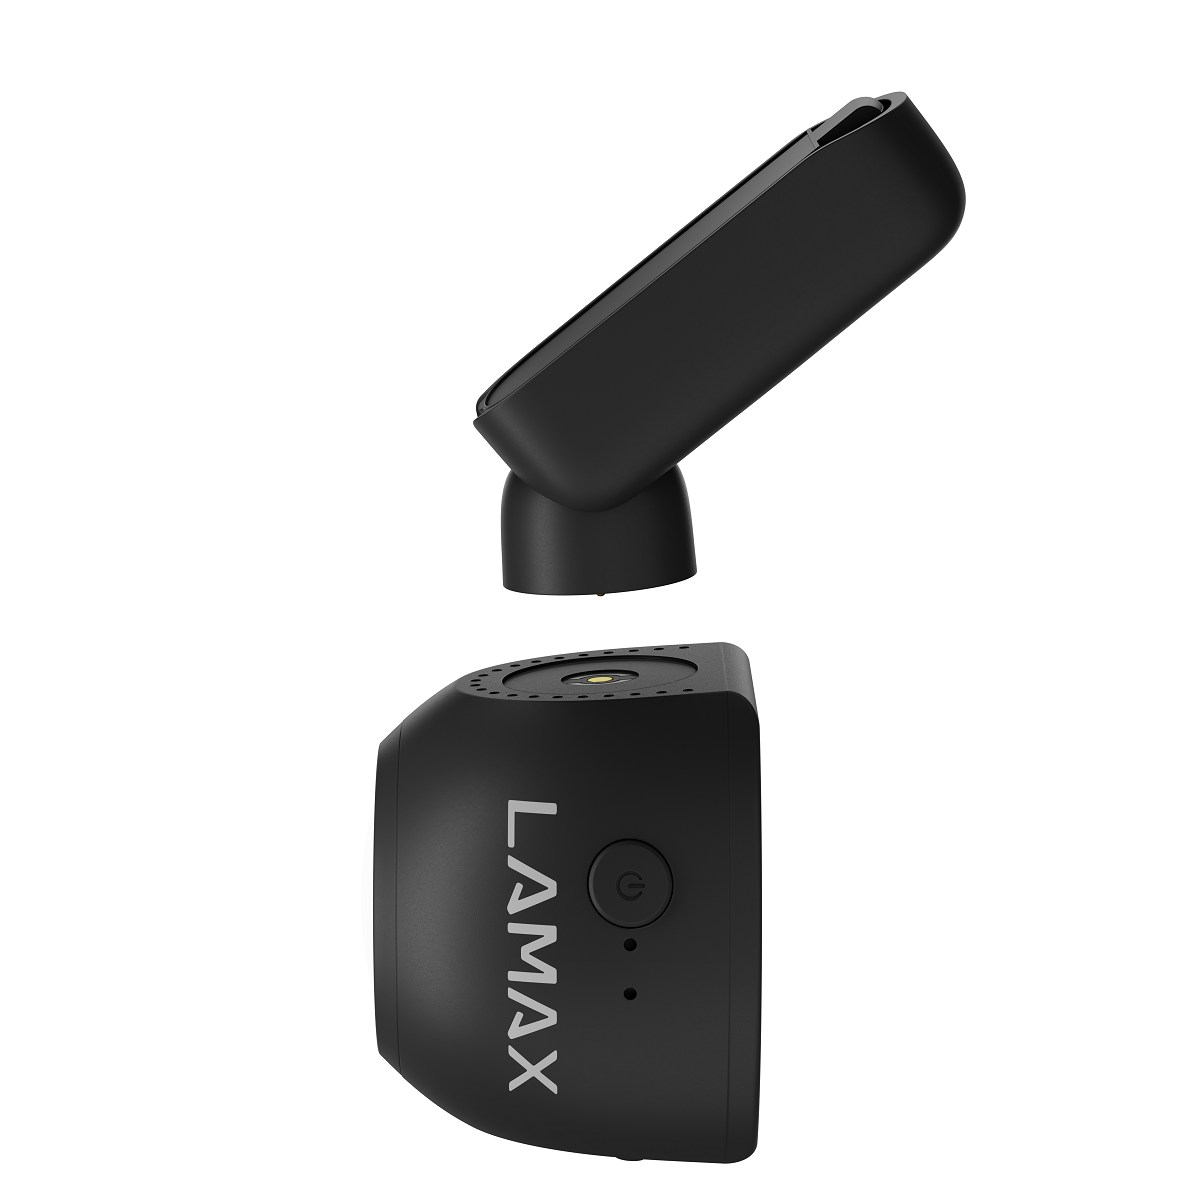 LAMAX T6 GPS WiFi Dashcam Display